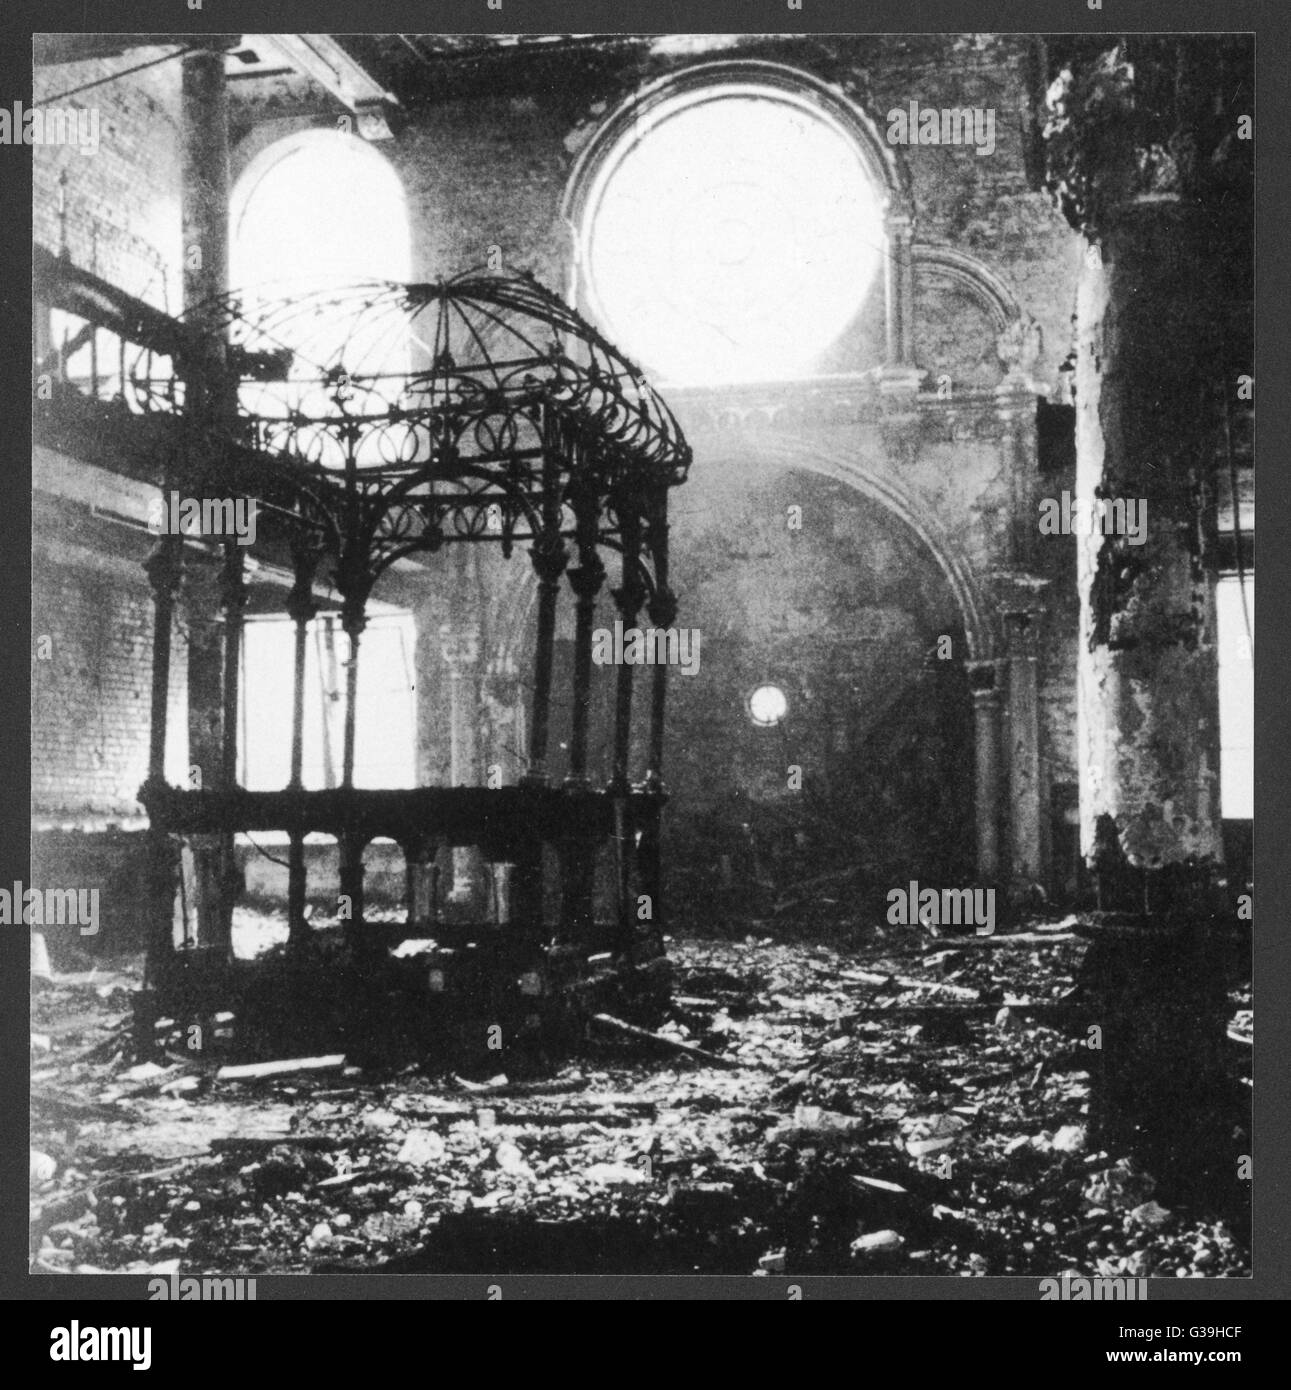 NIGHT OF THE BROKEN GLASS eine Reihe von Terroranschlägen wurden auf jüdische Synagogen und Geschäfte gemacht. Dieses Foto zeigt eine zerstörte Synagoge.     Datum: 9. November 1938 Stockfoto